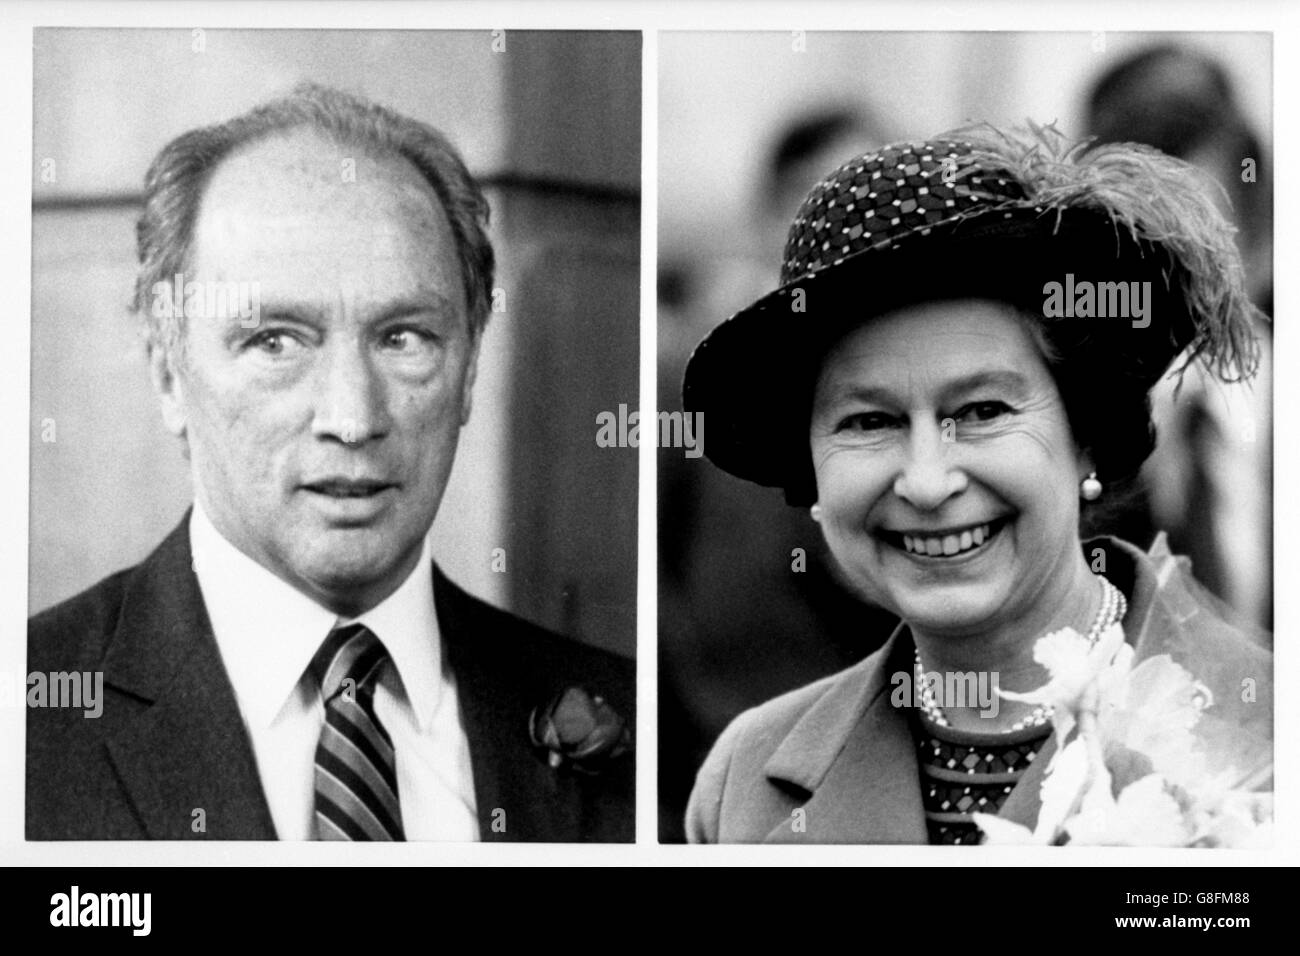 Photo composite de Pierre Trudeau, l'ancien premier ministre canadien, et de la reine Elizabeth II, qui a nommé aujourd'hui M. Trudeau Compagnon d'honneur, l'un des plus hauts honneurs que la reine peut accorder. Banque D'Images